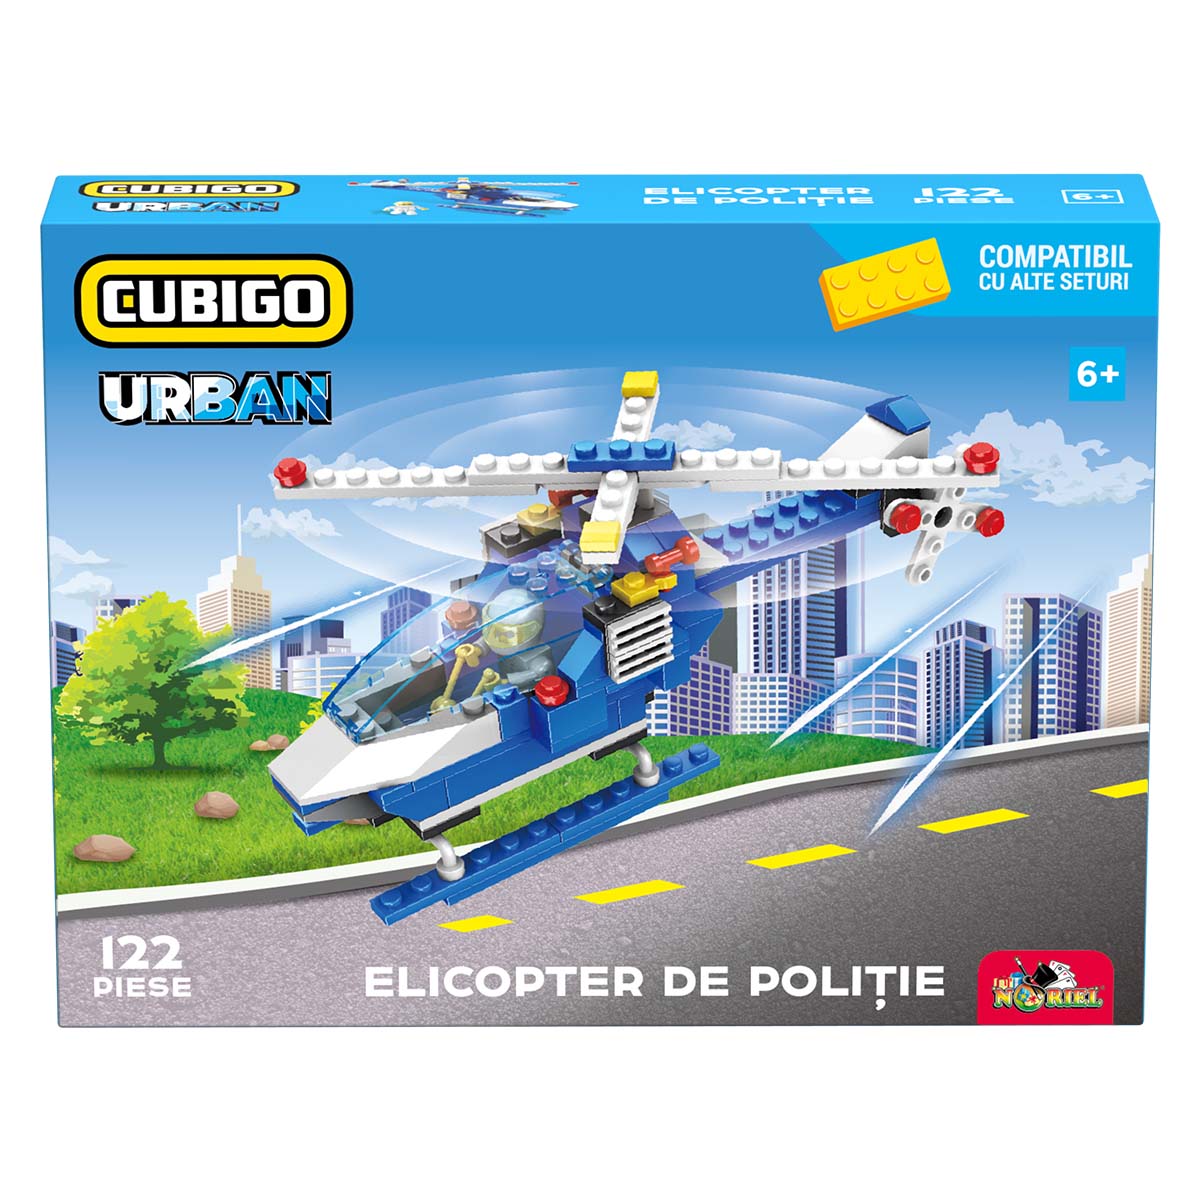 Set de constructie, Cubigo Urban, Elicopter de politie, 122 piese